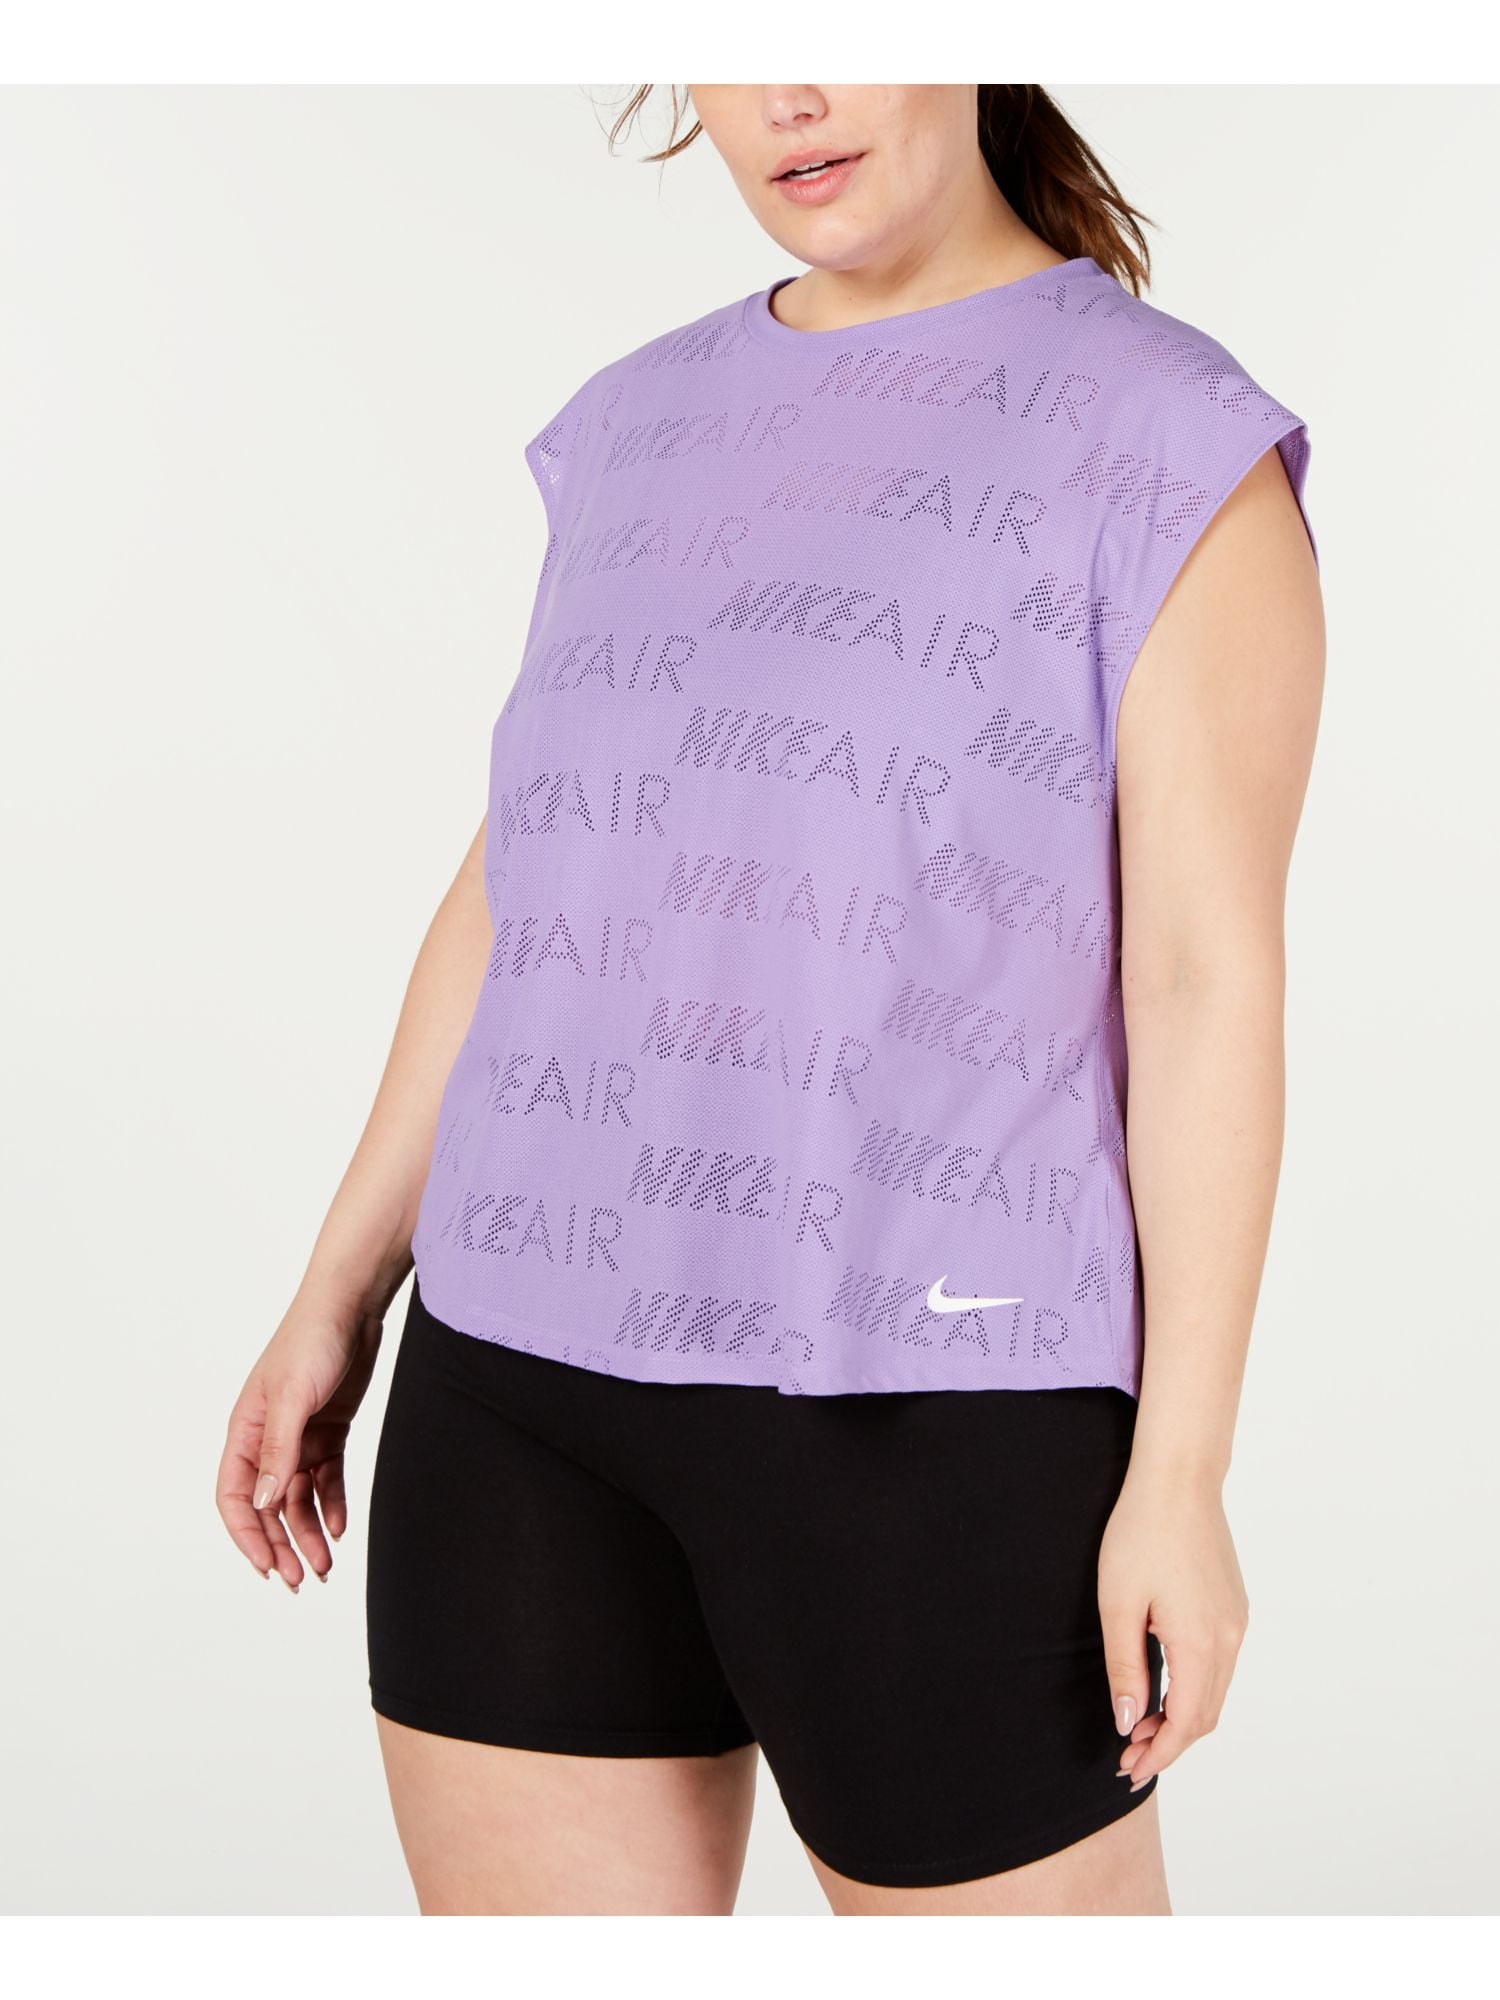 purple nike womens clothing